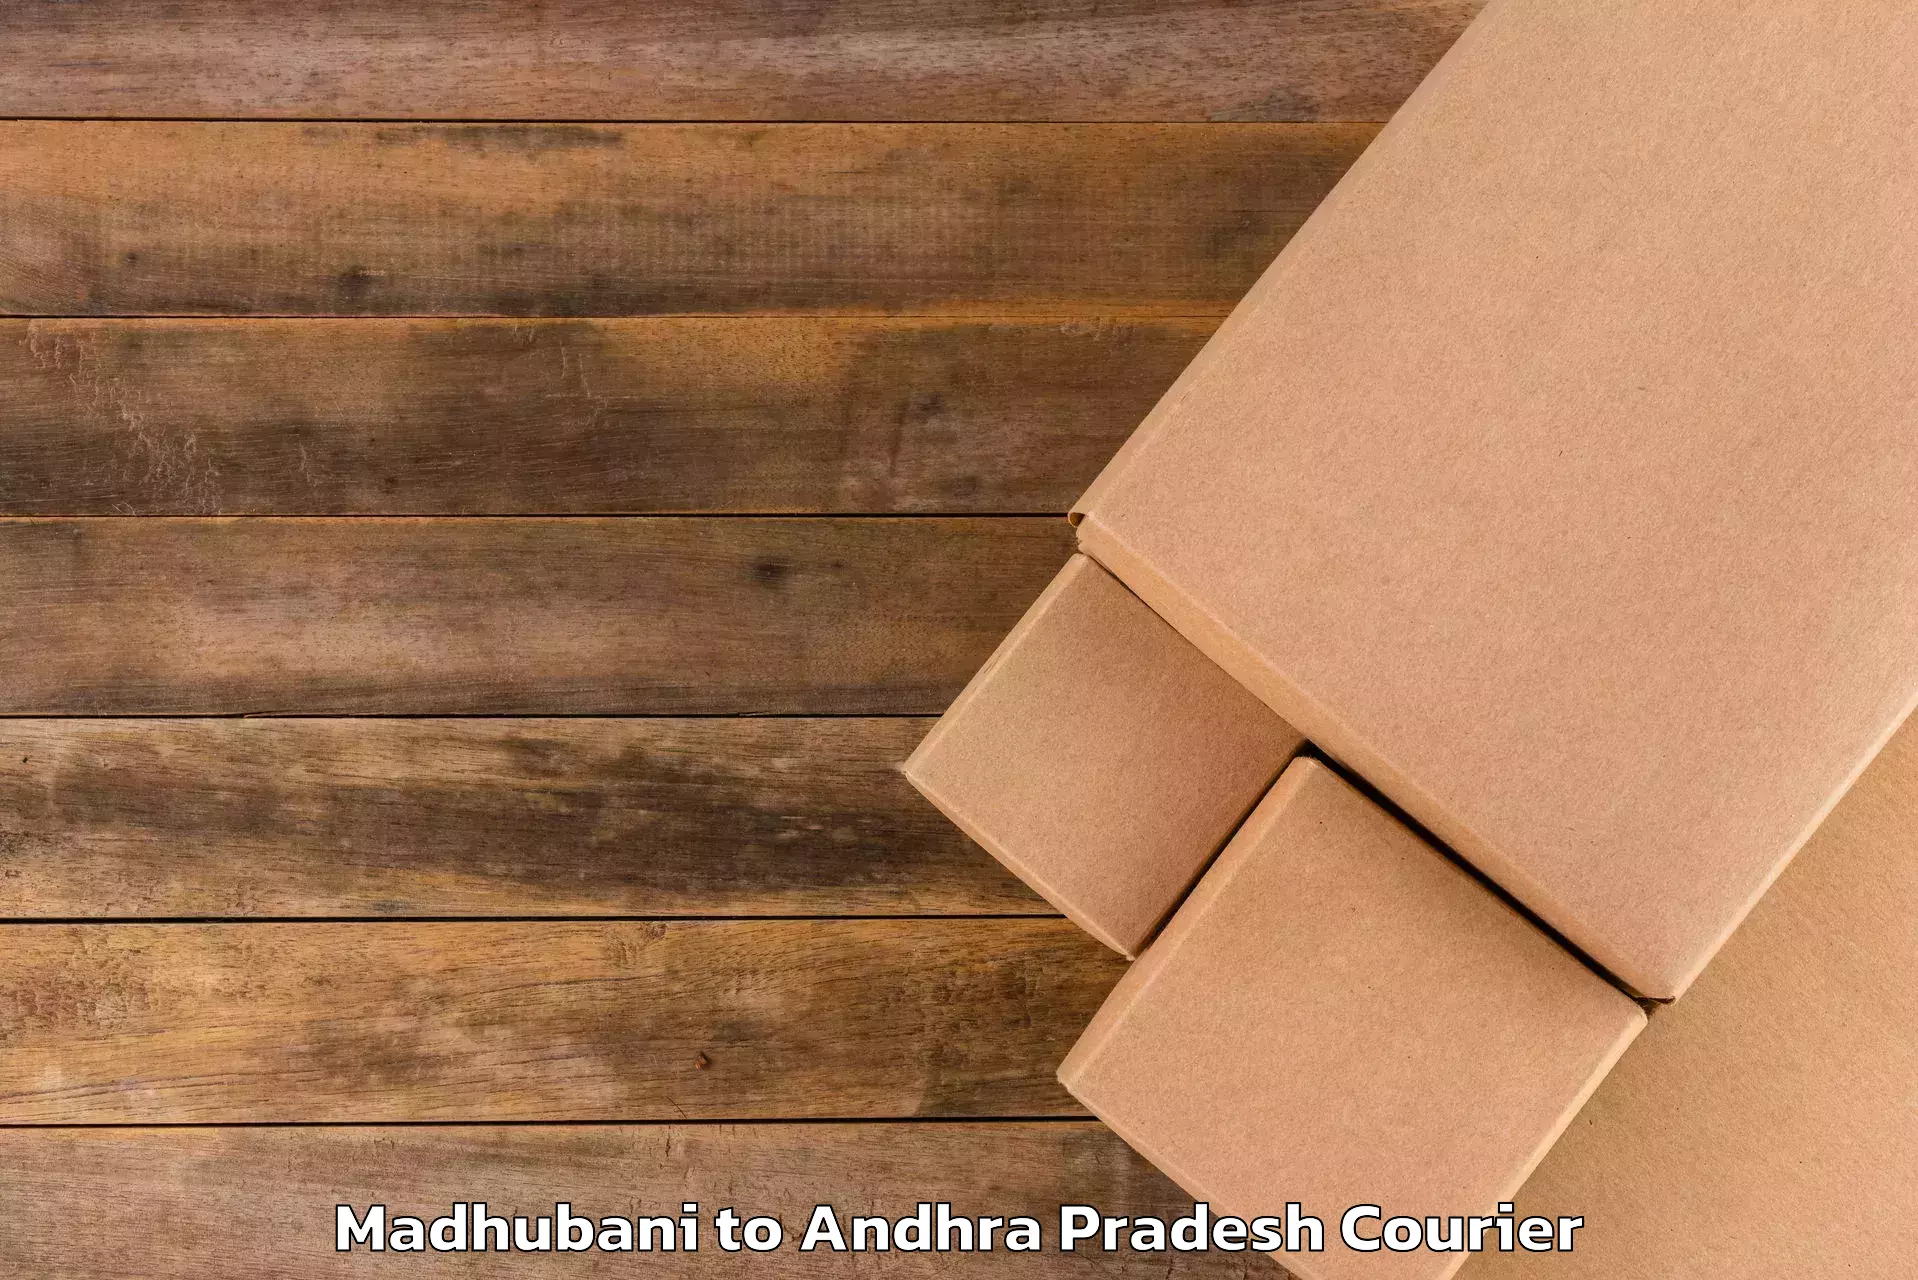 Luggage delivery network Madhubani to Ranastalam